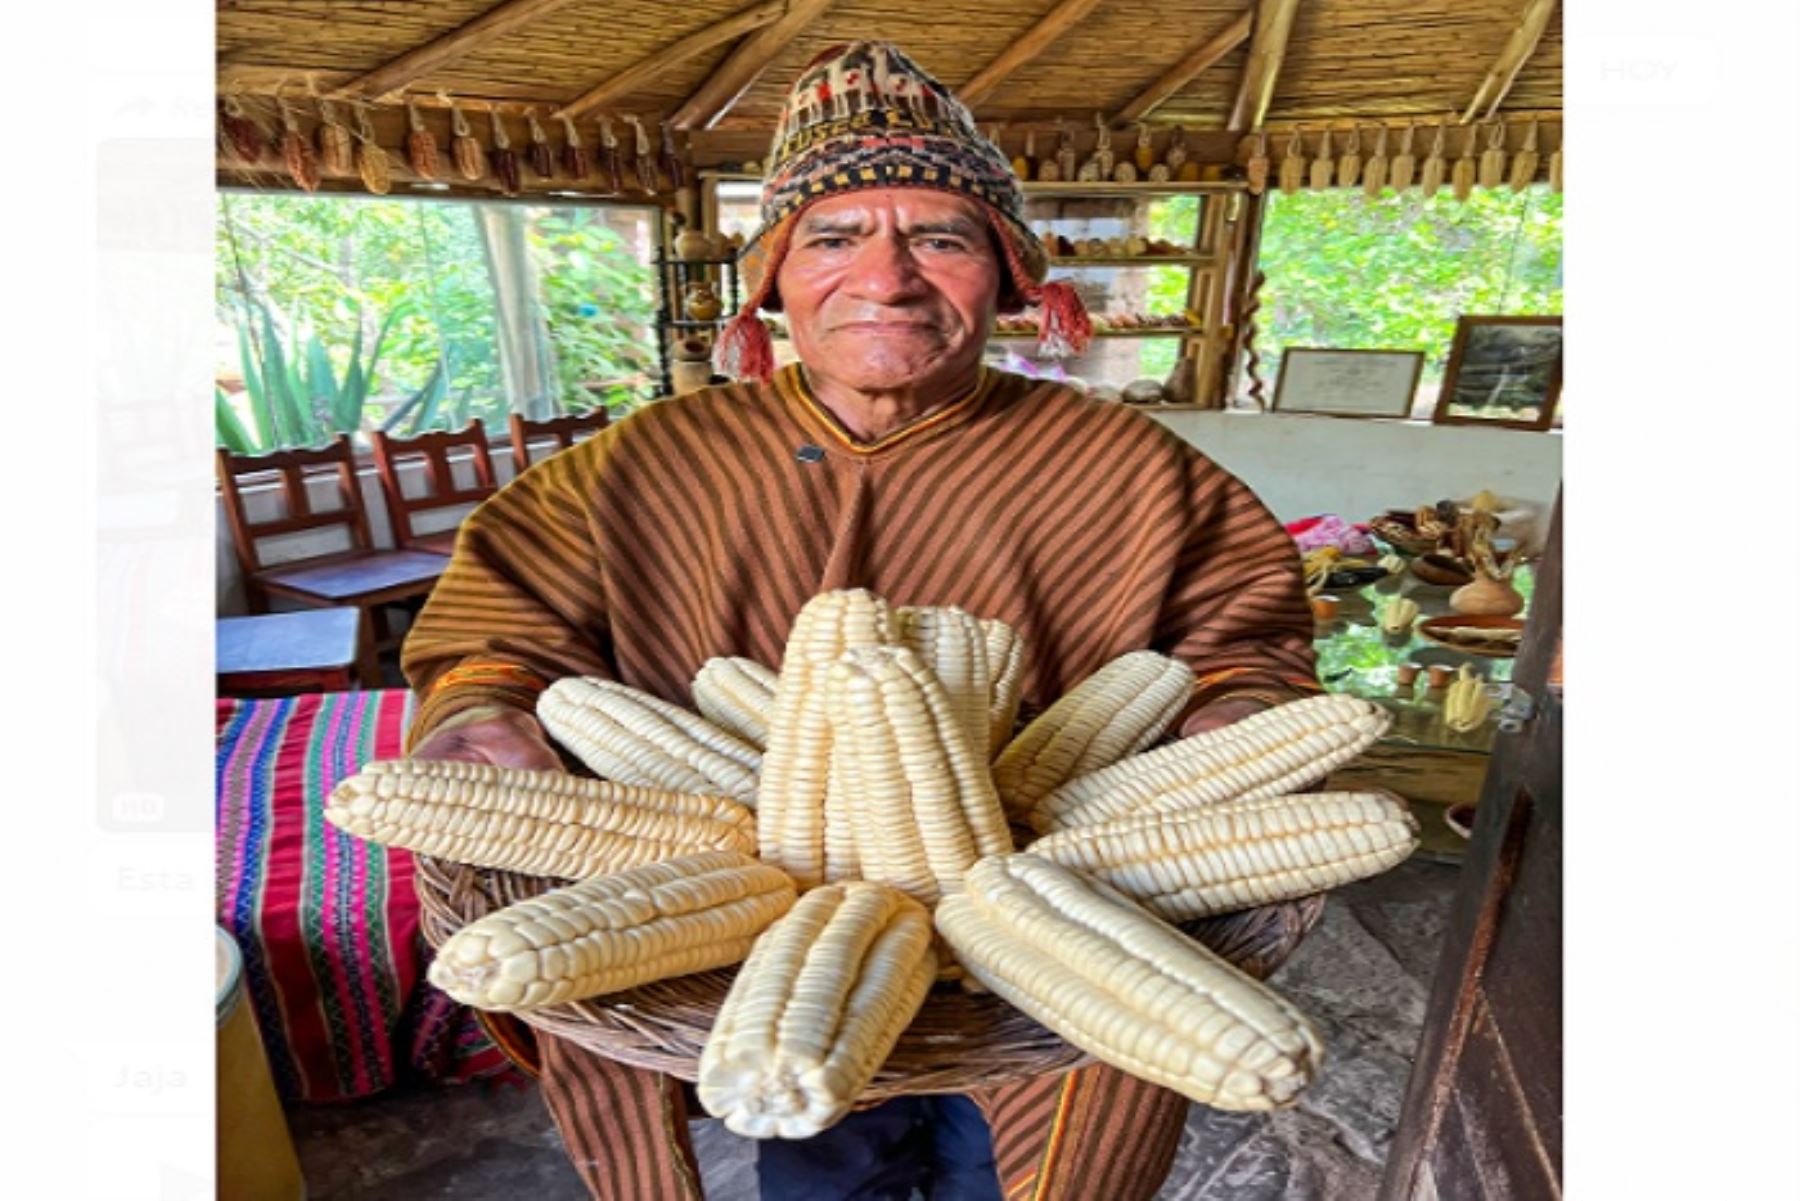 La variedad del maíz blanco cusqueño crece exclusivamente en las provincias de Calca y Urubamba, en el Valle Sagrado, y destaca por su calidad excepcional y exquisito sabor.